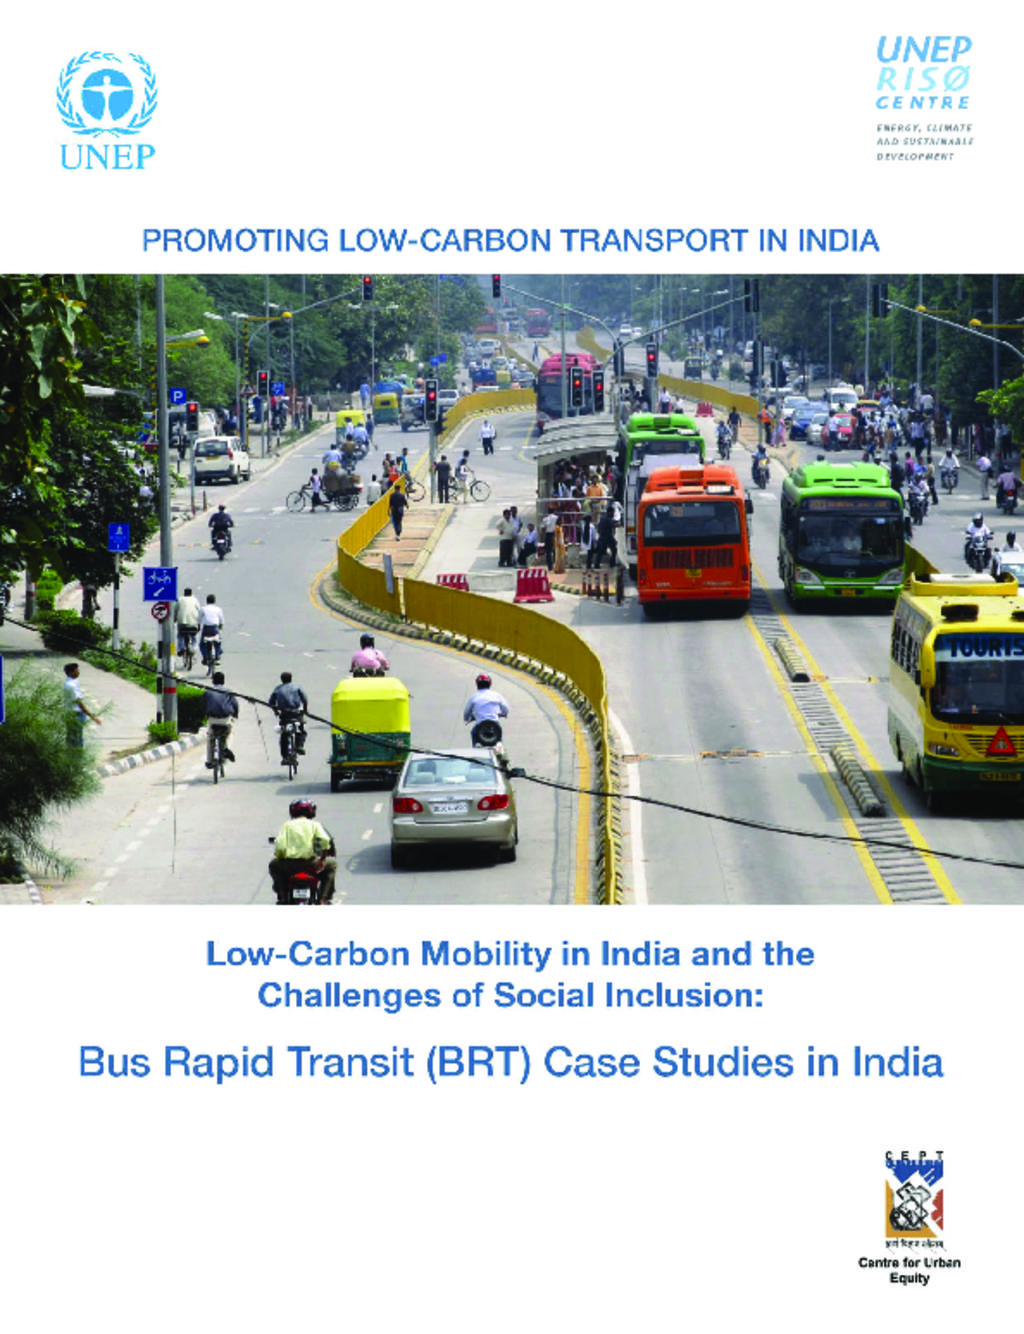 BRTS case studies in India